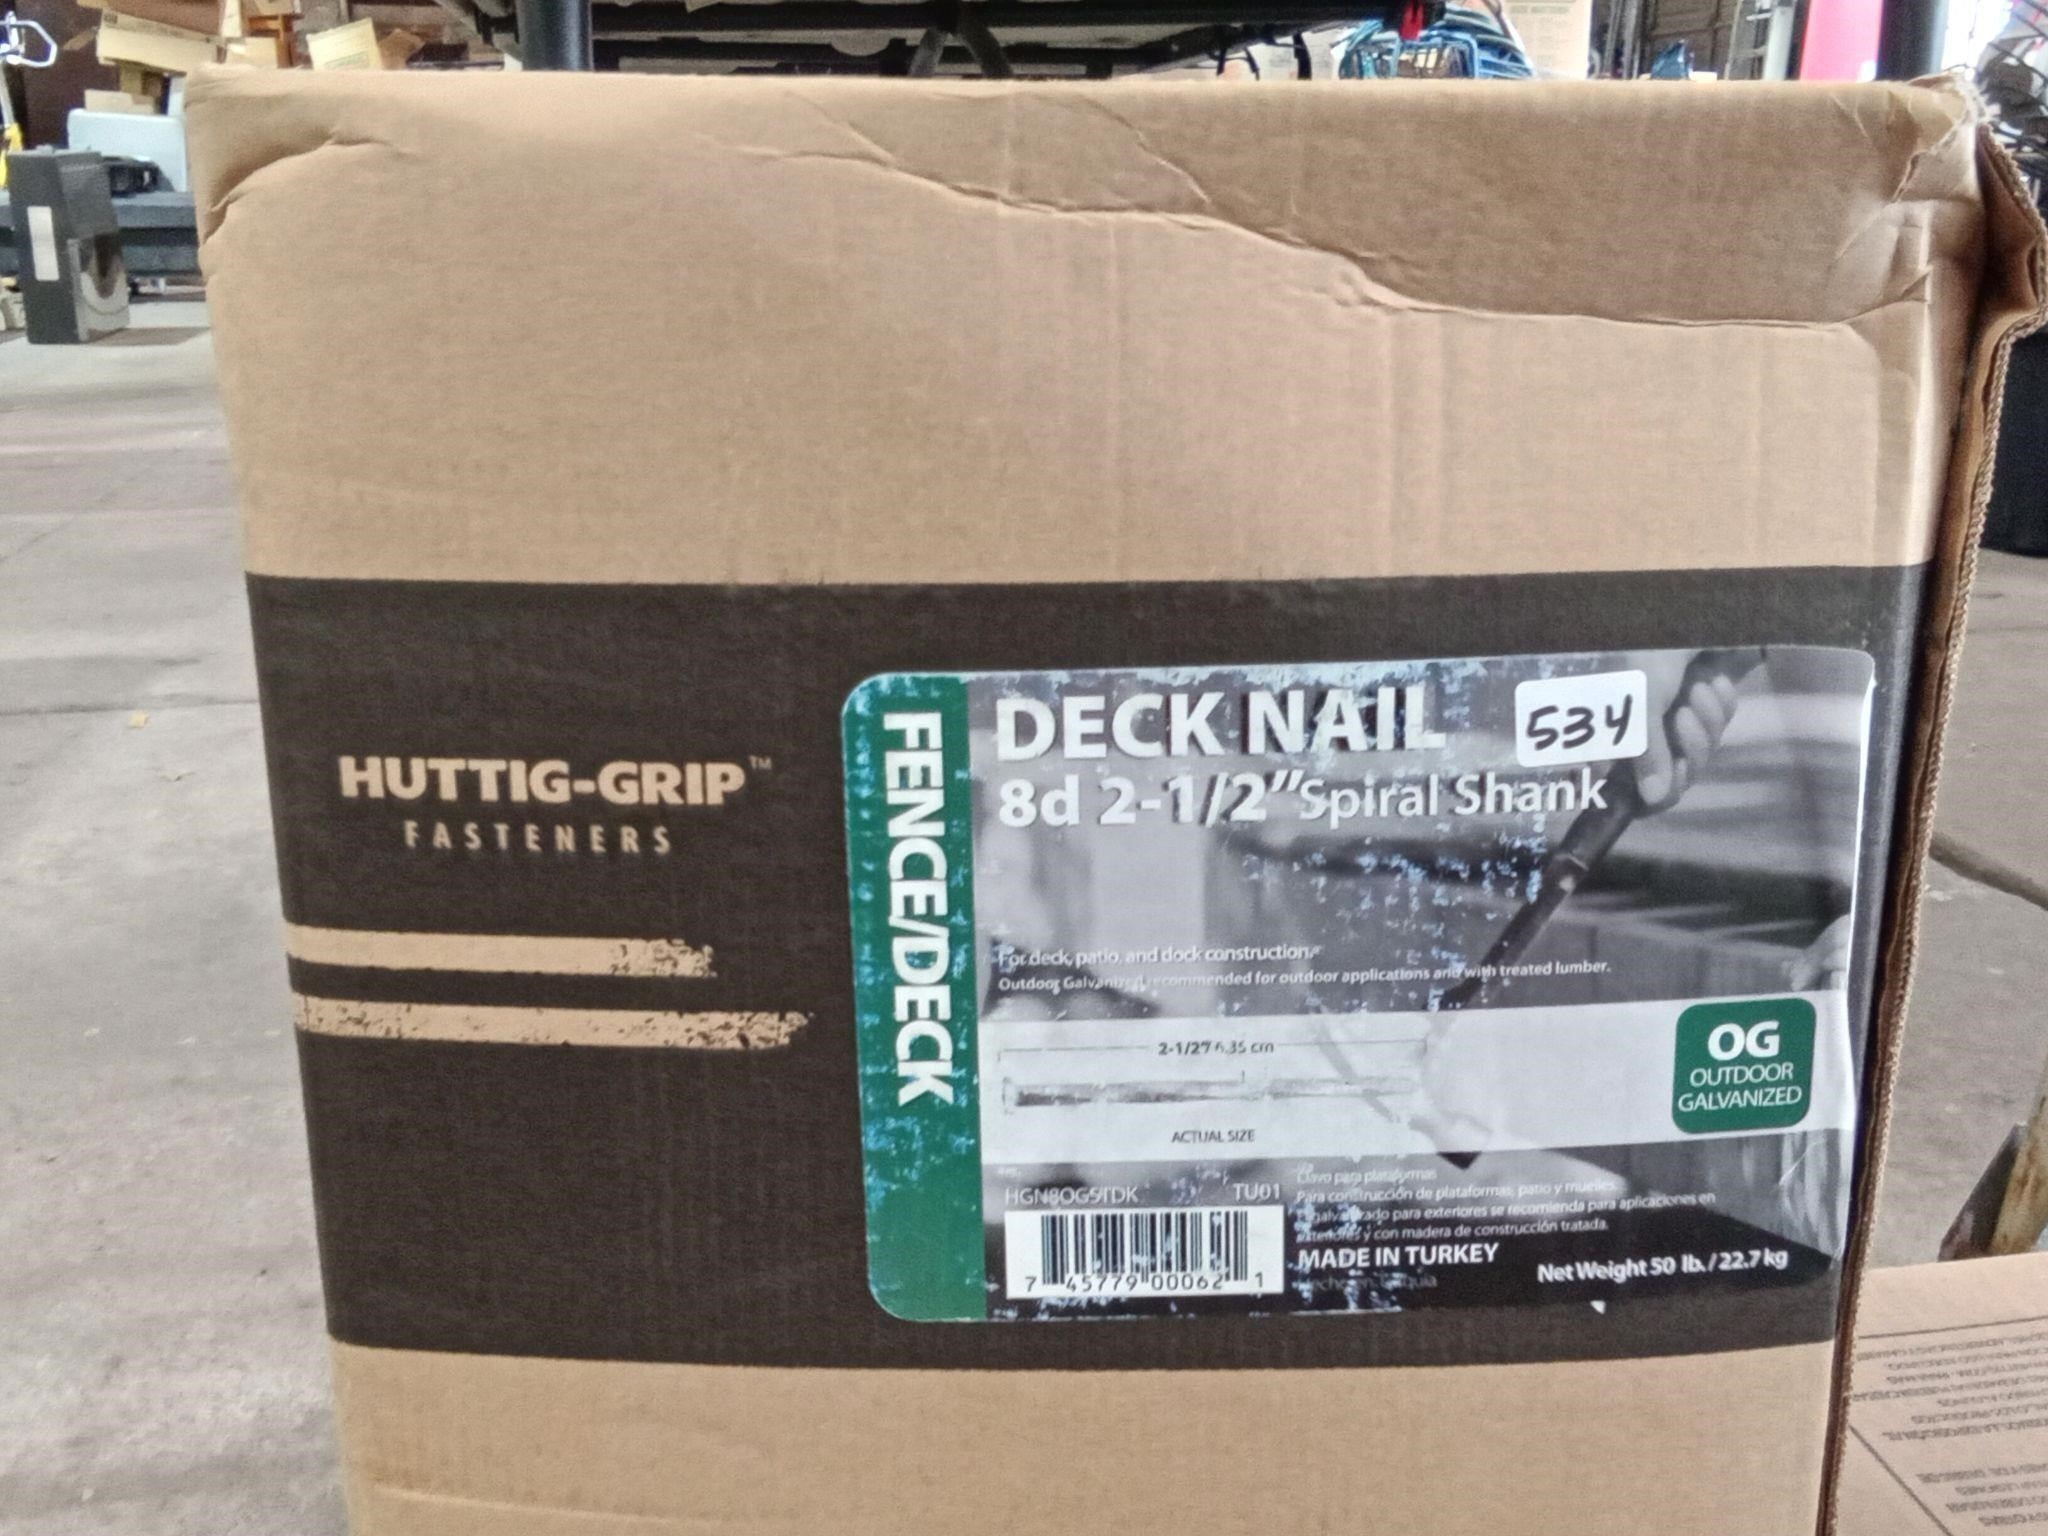 Huttig-Grip Deck Nail 8d 2-1/2" Spiral Shank